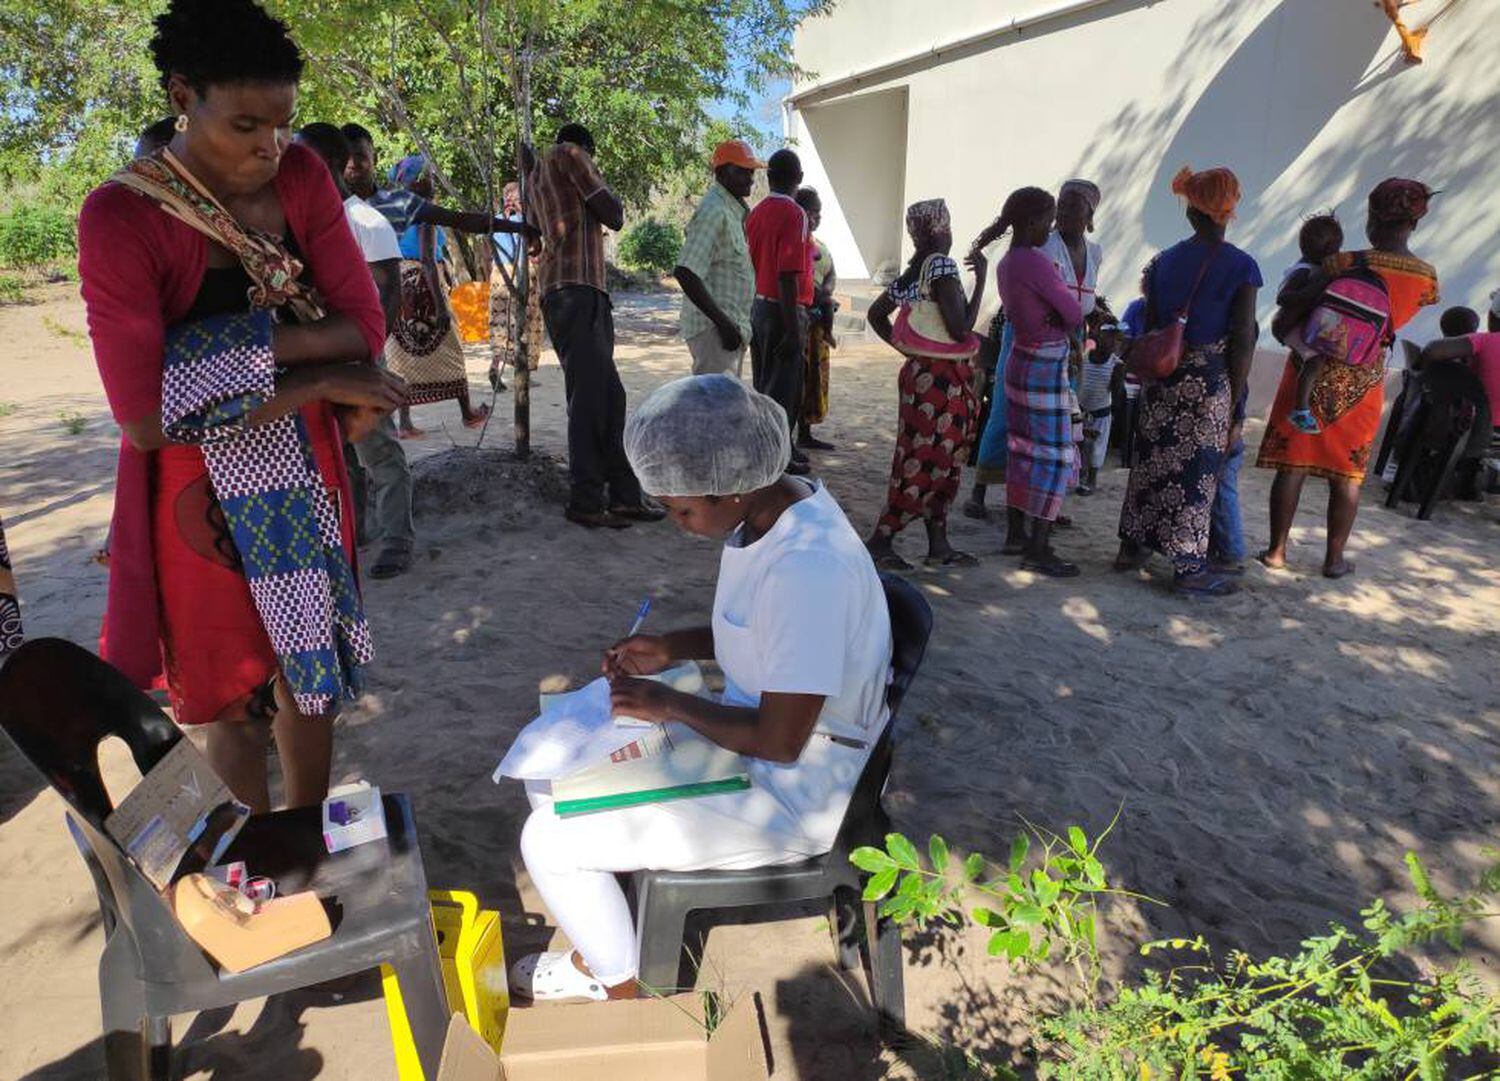 Joana Mauricio, enfermeira do hospital de Moamba (Moçambique), participa da equipe que a cada três meses viaja a comunidades remotas para informar sobre saúde sexual e reprodutiva e distribuir anticoncepcionais às mulheres que solicitam. No começo de março, ela esteve na aldeia de Mahulane.